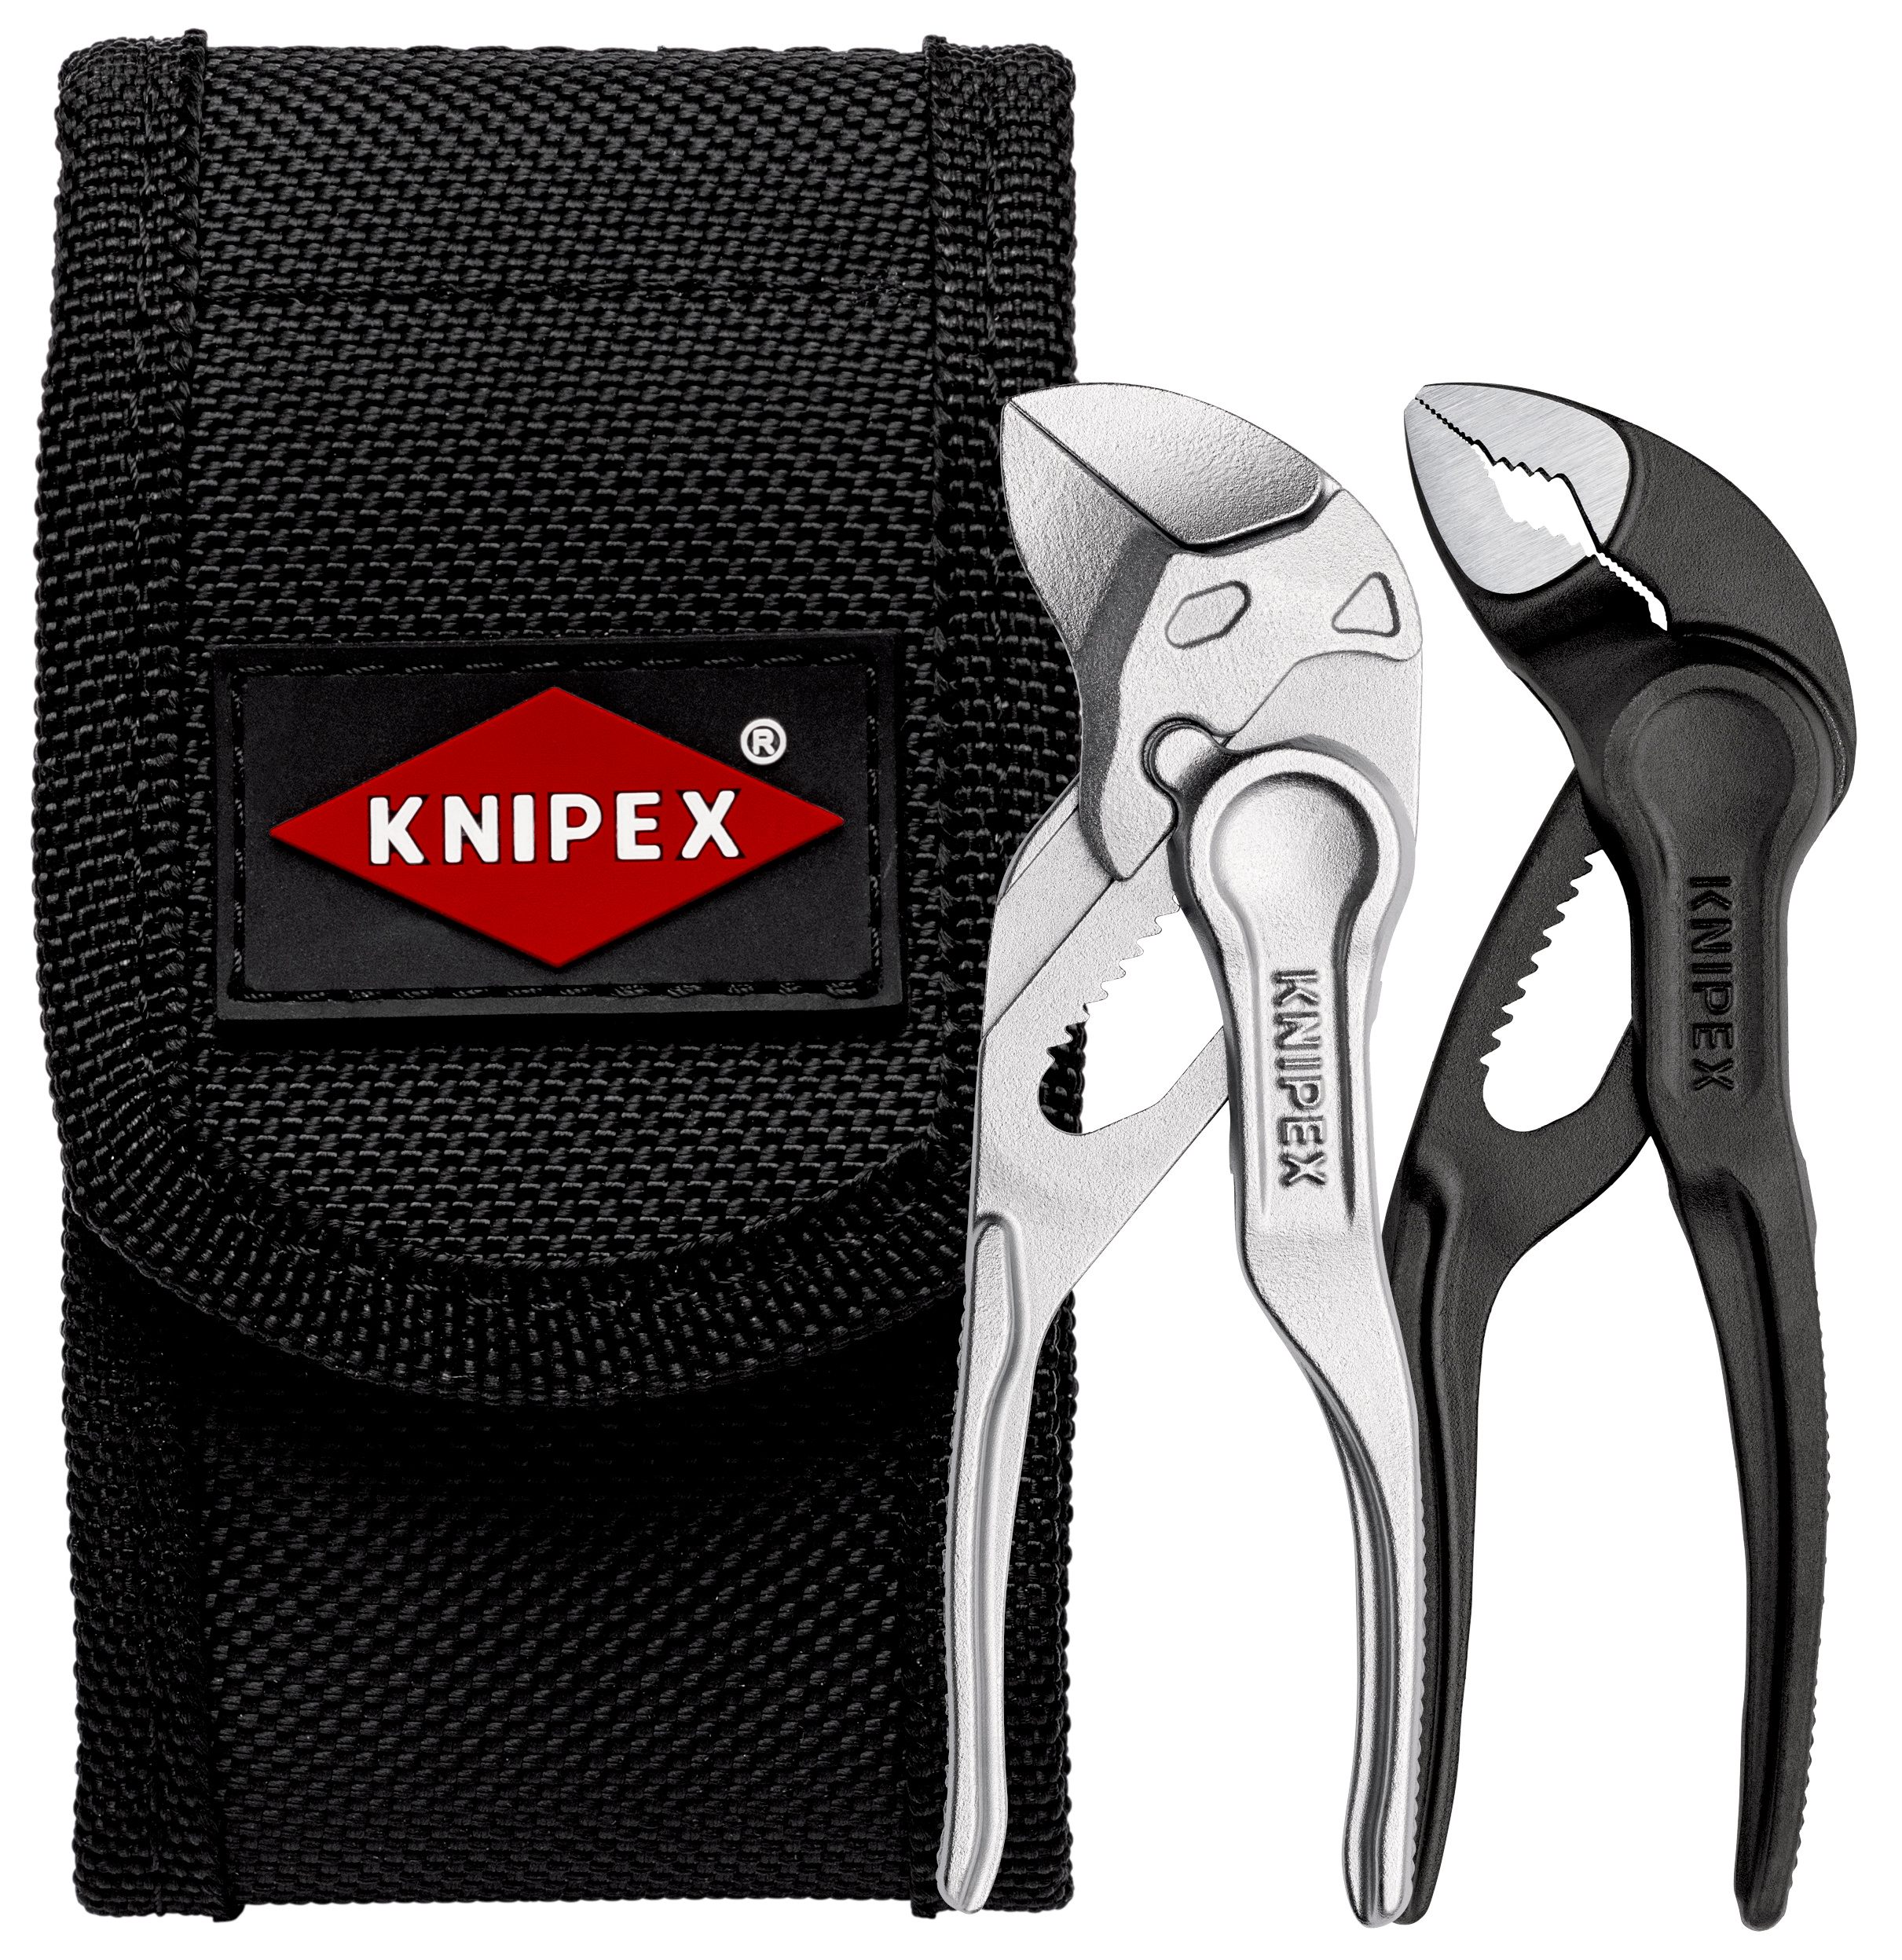 Knipex cobra купить. Knipex XS 8604100. Knipex Cobra XS. Knipex KN 8604100. Knipex 00 20 72 v04 XS.